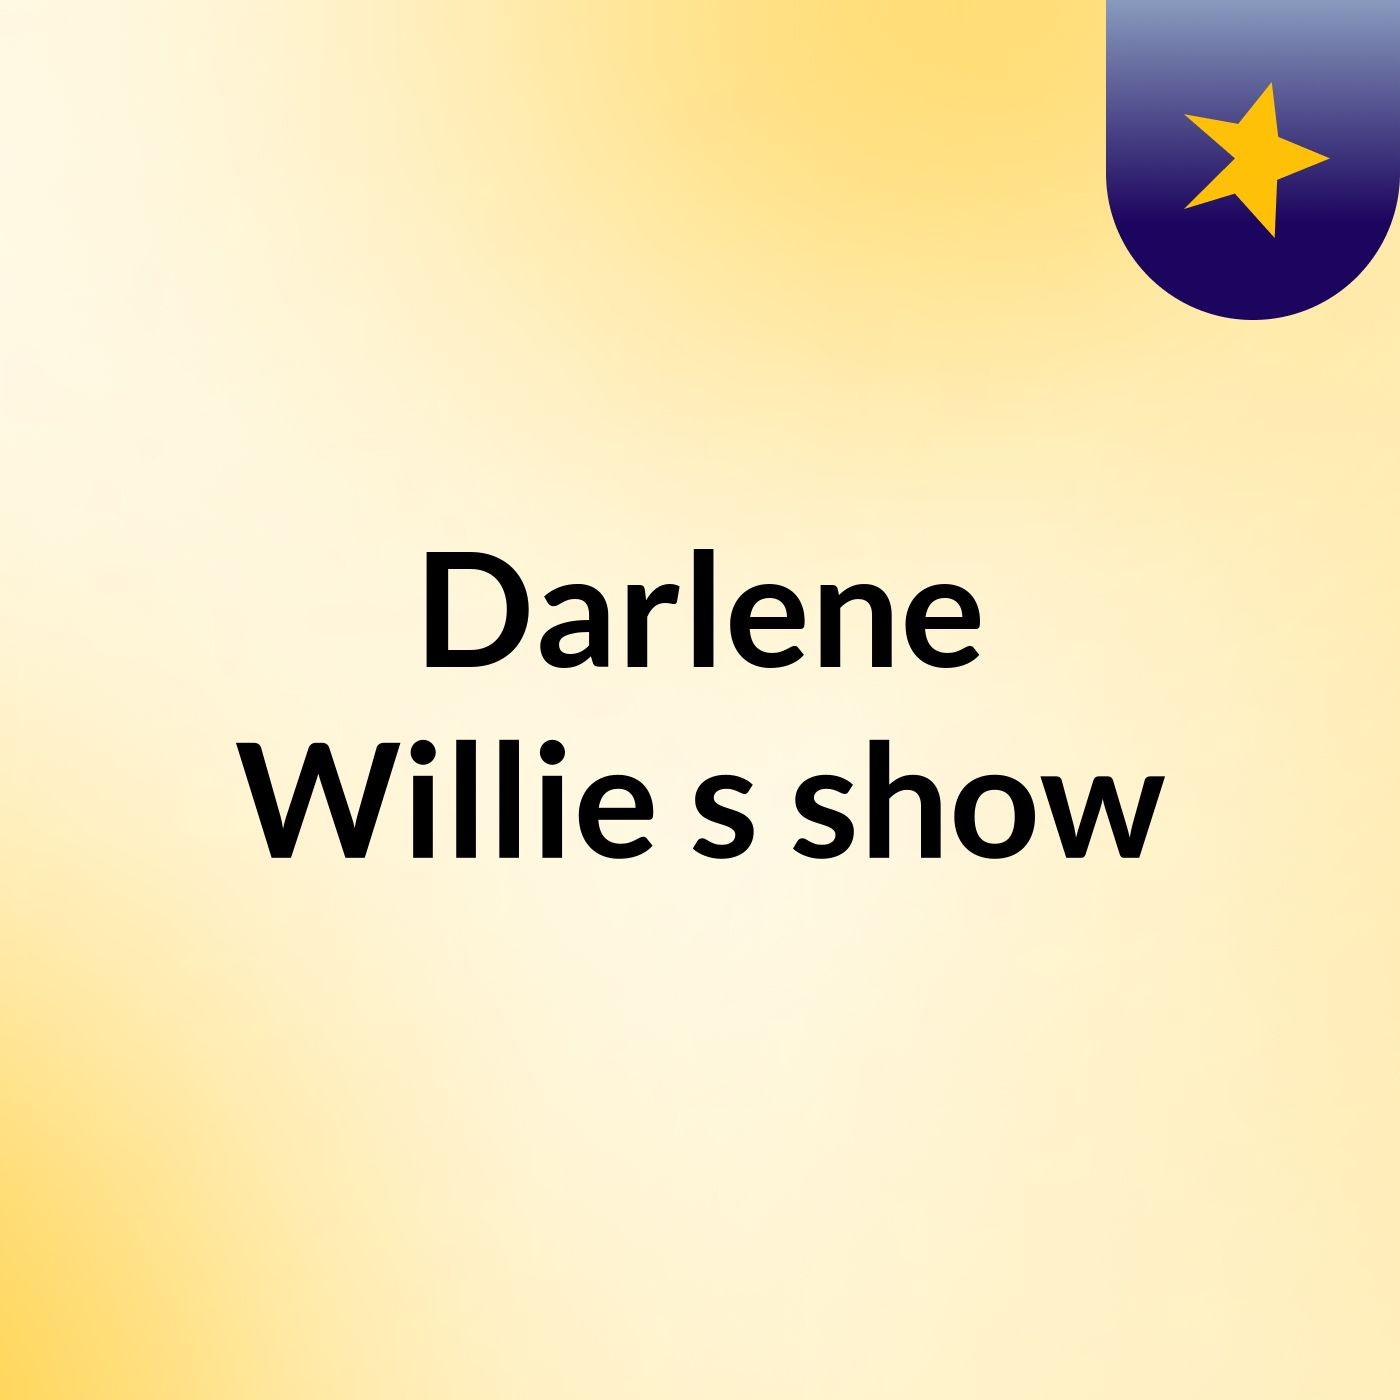 Darlene Willie's show